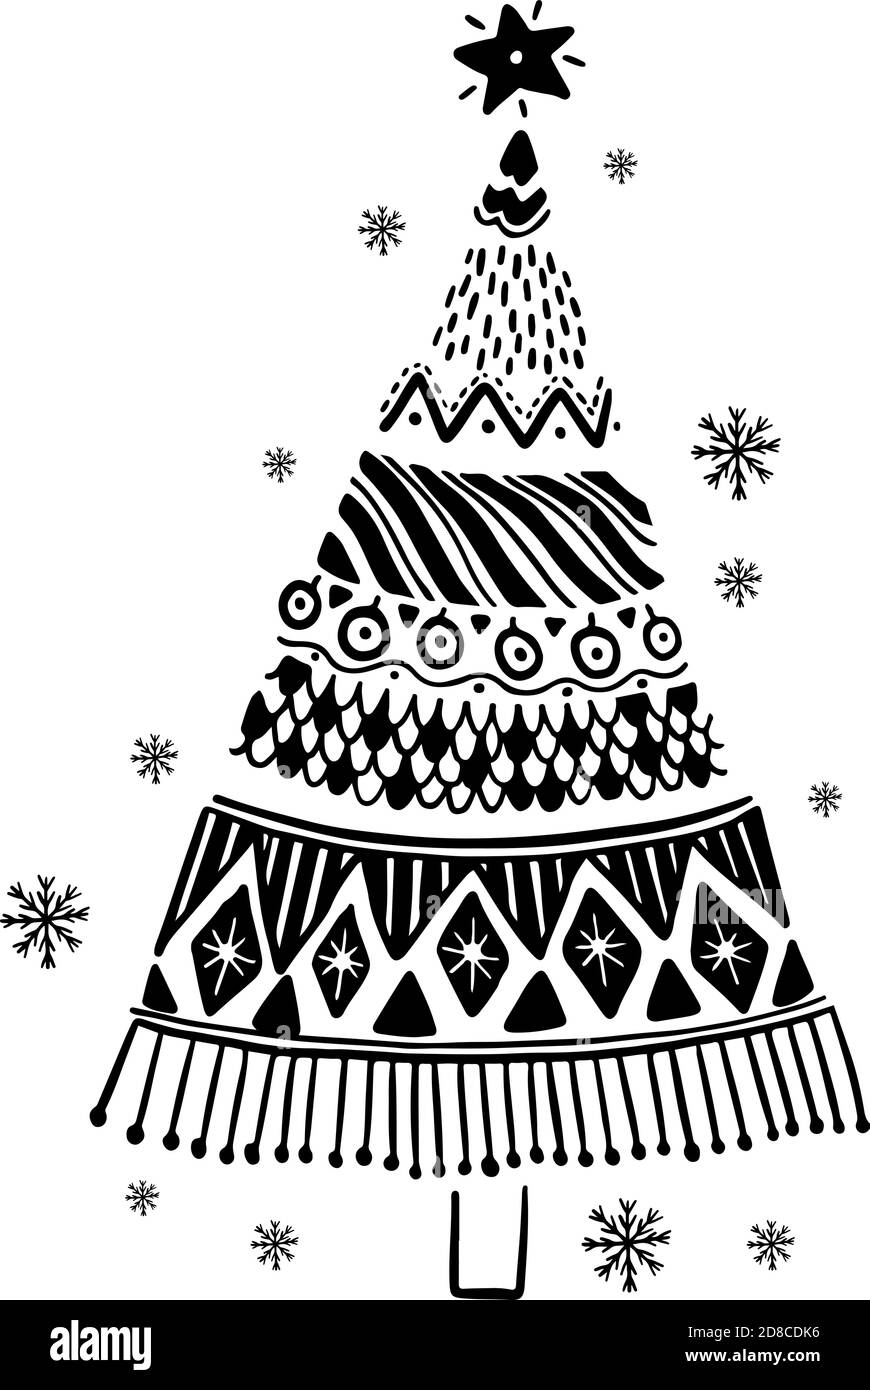 Frohe Weihnachten Dekoration von Hand gezeichnet.Doodle Stil Grußkarte mit niedlichen Weihnachtsbaum. Stock Vektor